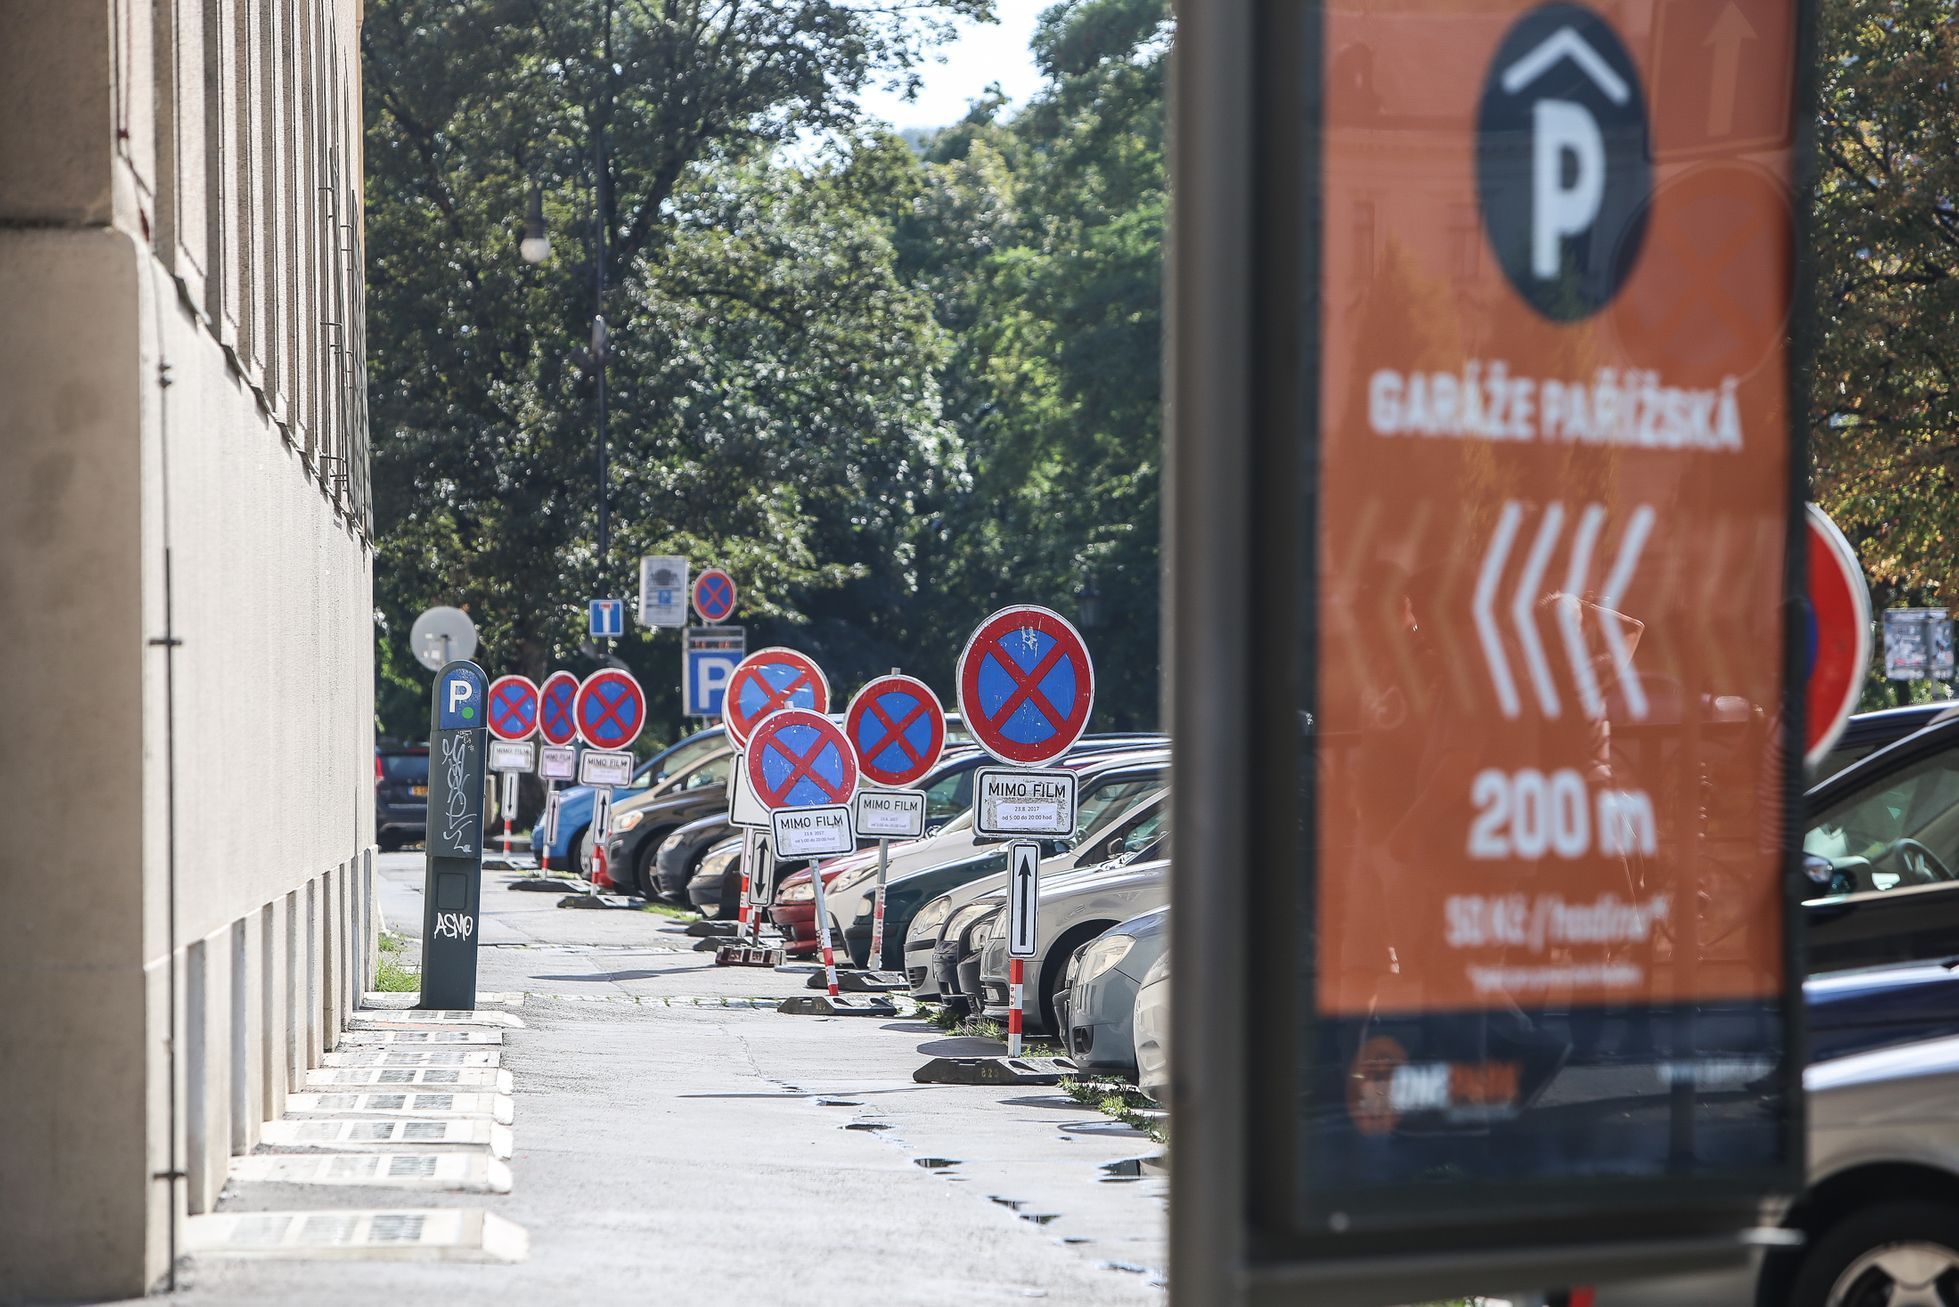 Parkování na Praze 1 - parkovací domy, pozemní parkoviště, volná místa, doprava